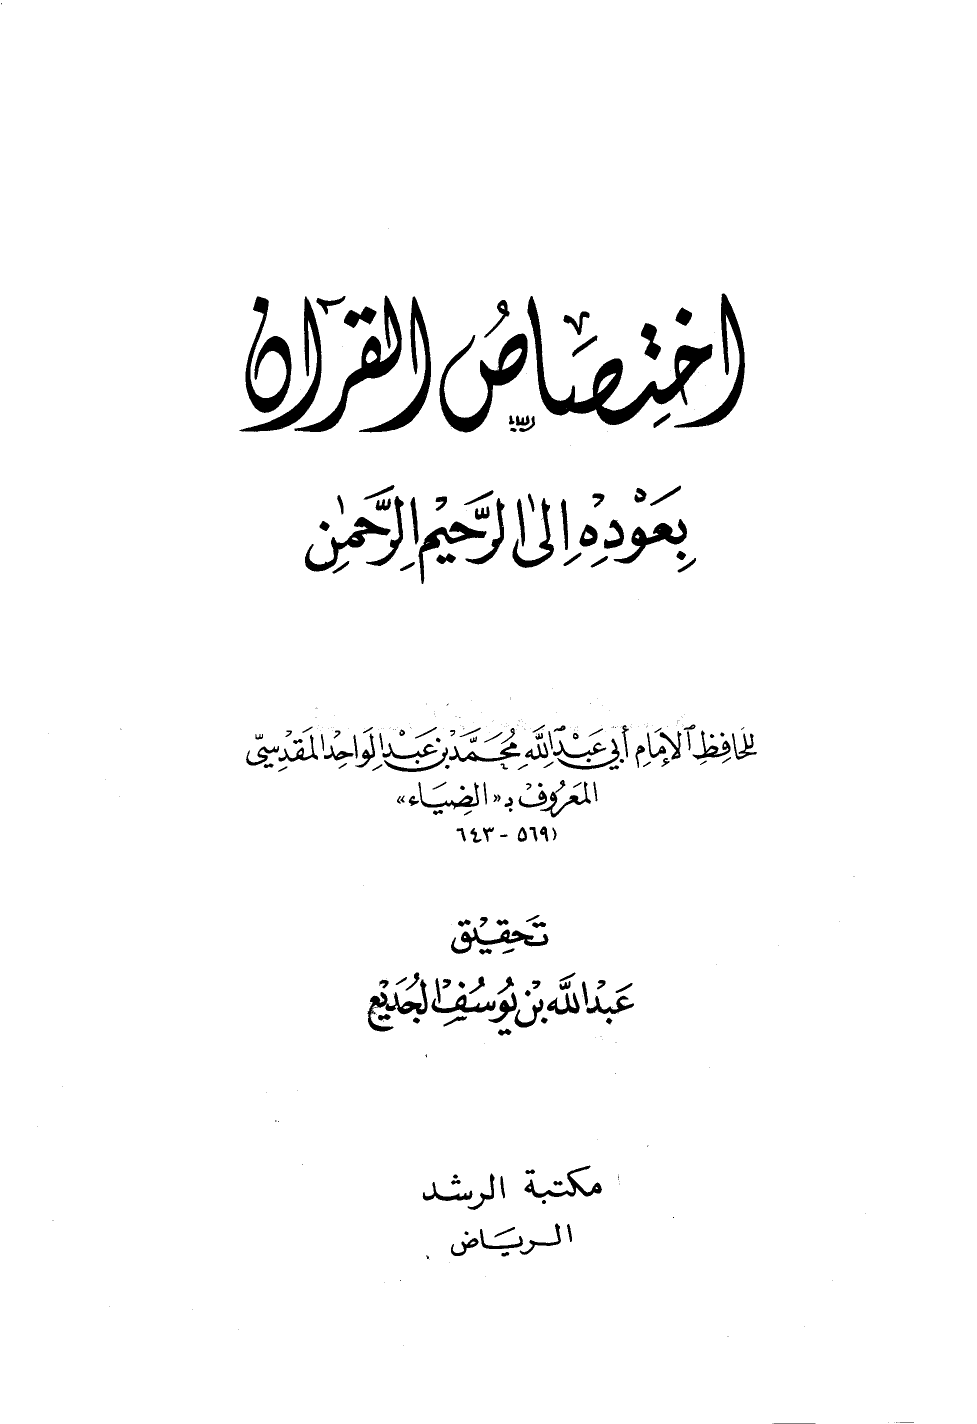 تنزيل وتحميل كتاِب اختصاص القرآن بعودة إلى الرحيم الرحمن pdf برابط مباشر مجاناً 